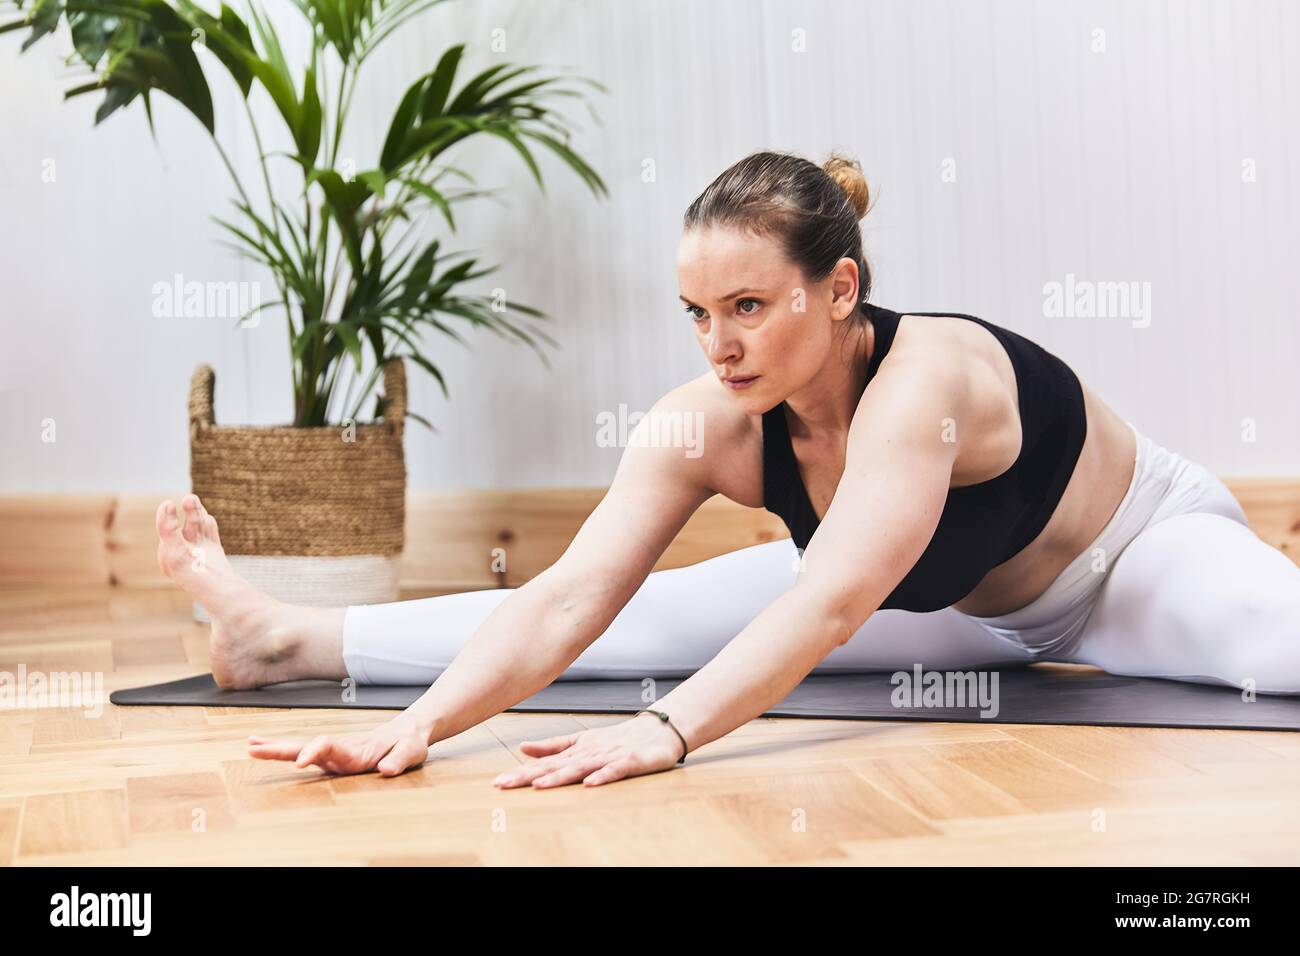 Détail partiel de la femme russe pratiquant le yoga nood sur un tapis Banque D'Images